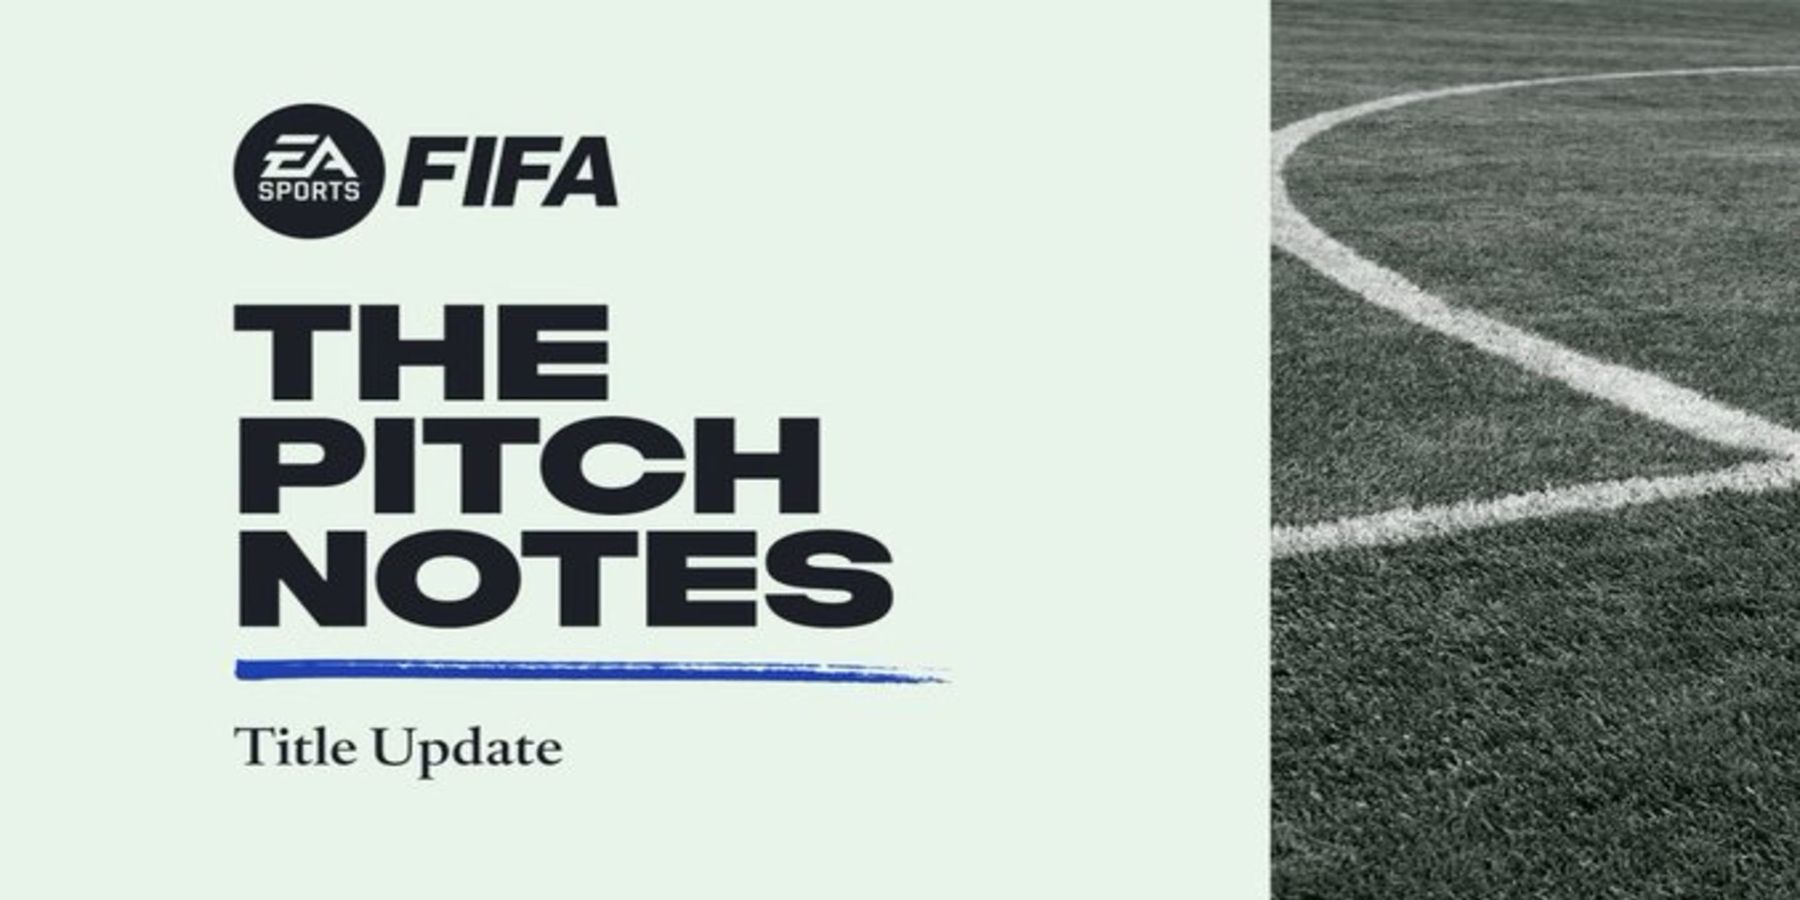 Обновление названия FIFA 22 №8 скоро выйдет на ПК